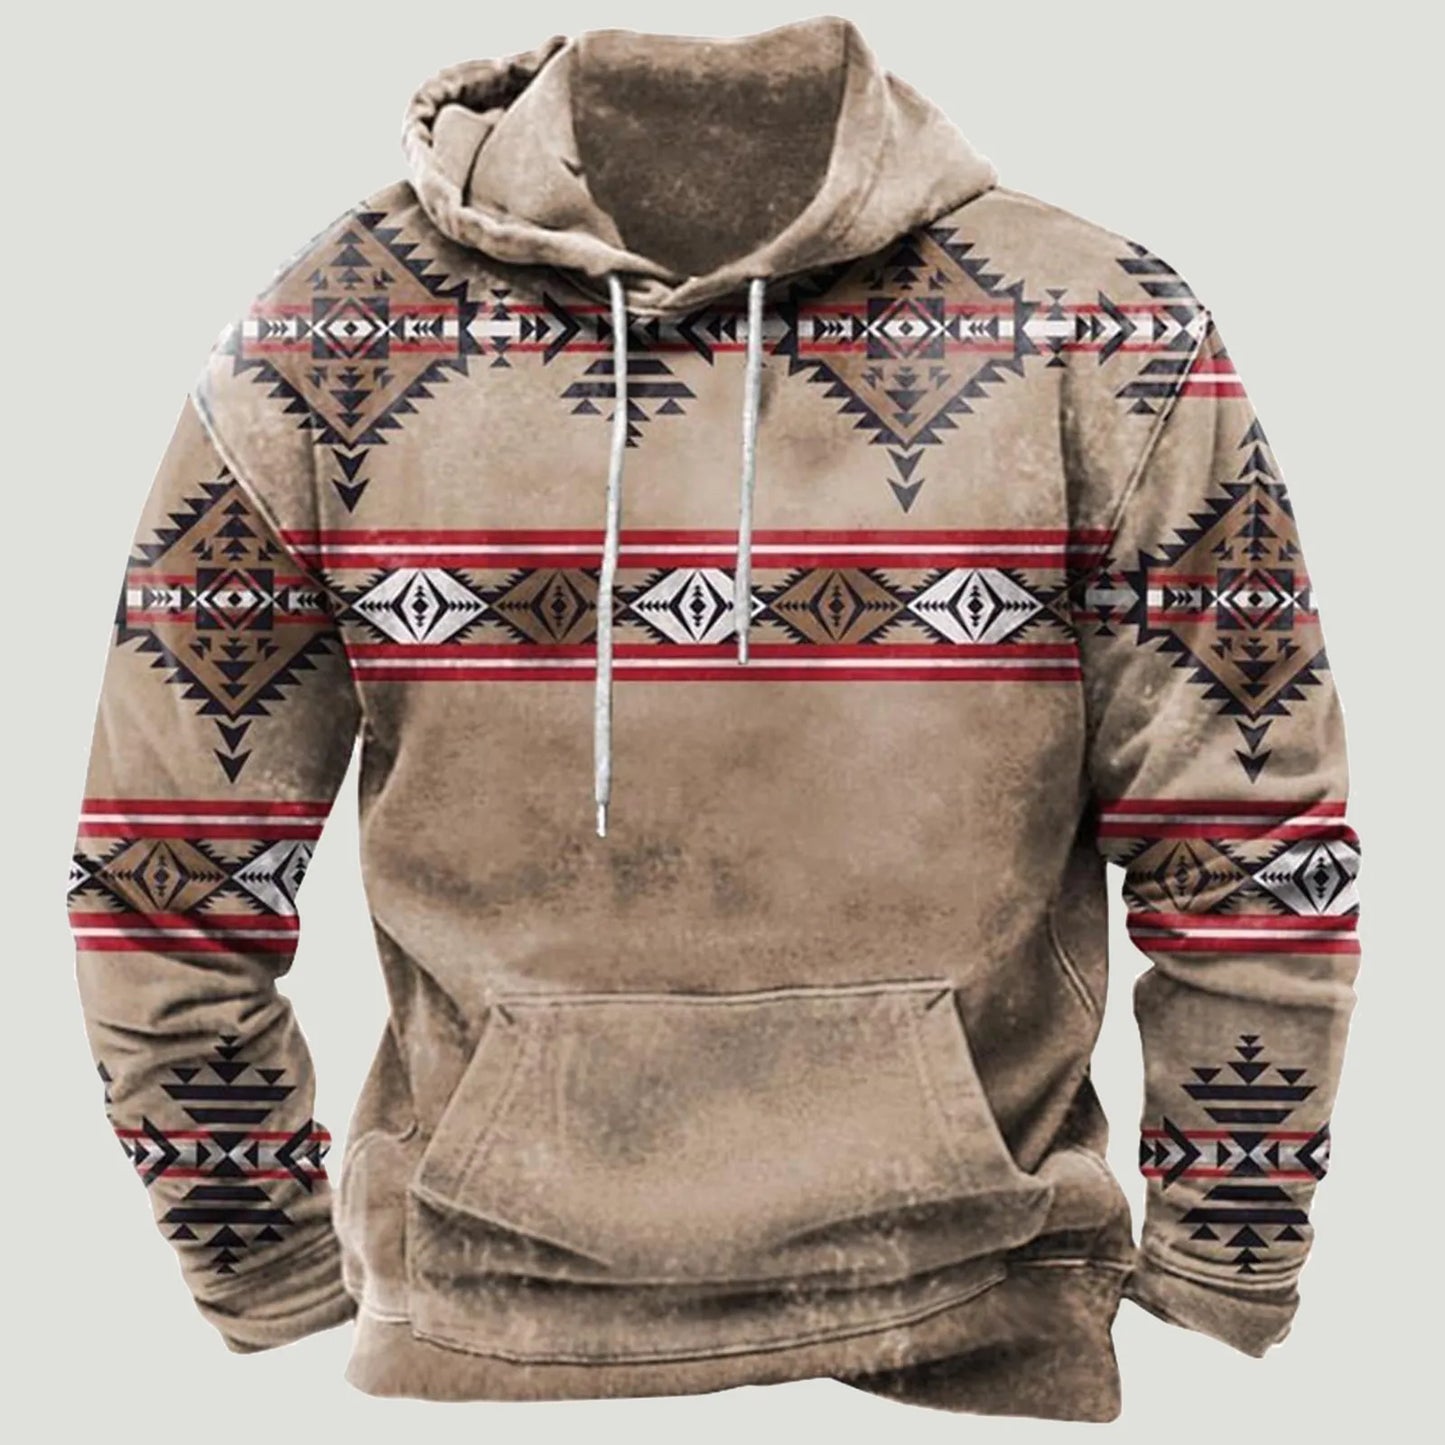 Aztec Hoodies Men's Streetwear Vintage Clothing Casual Sweatshirt